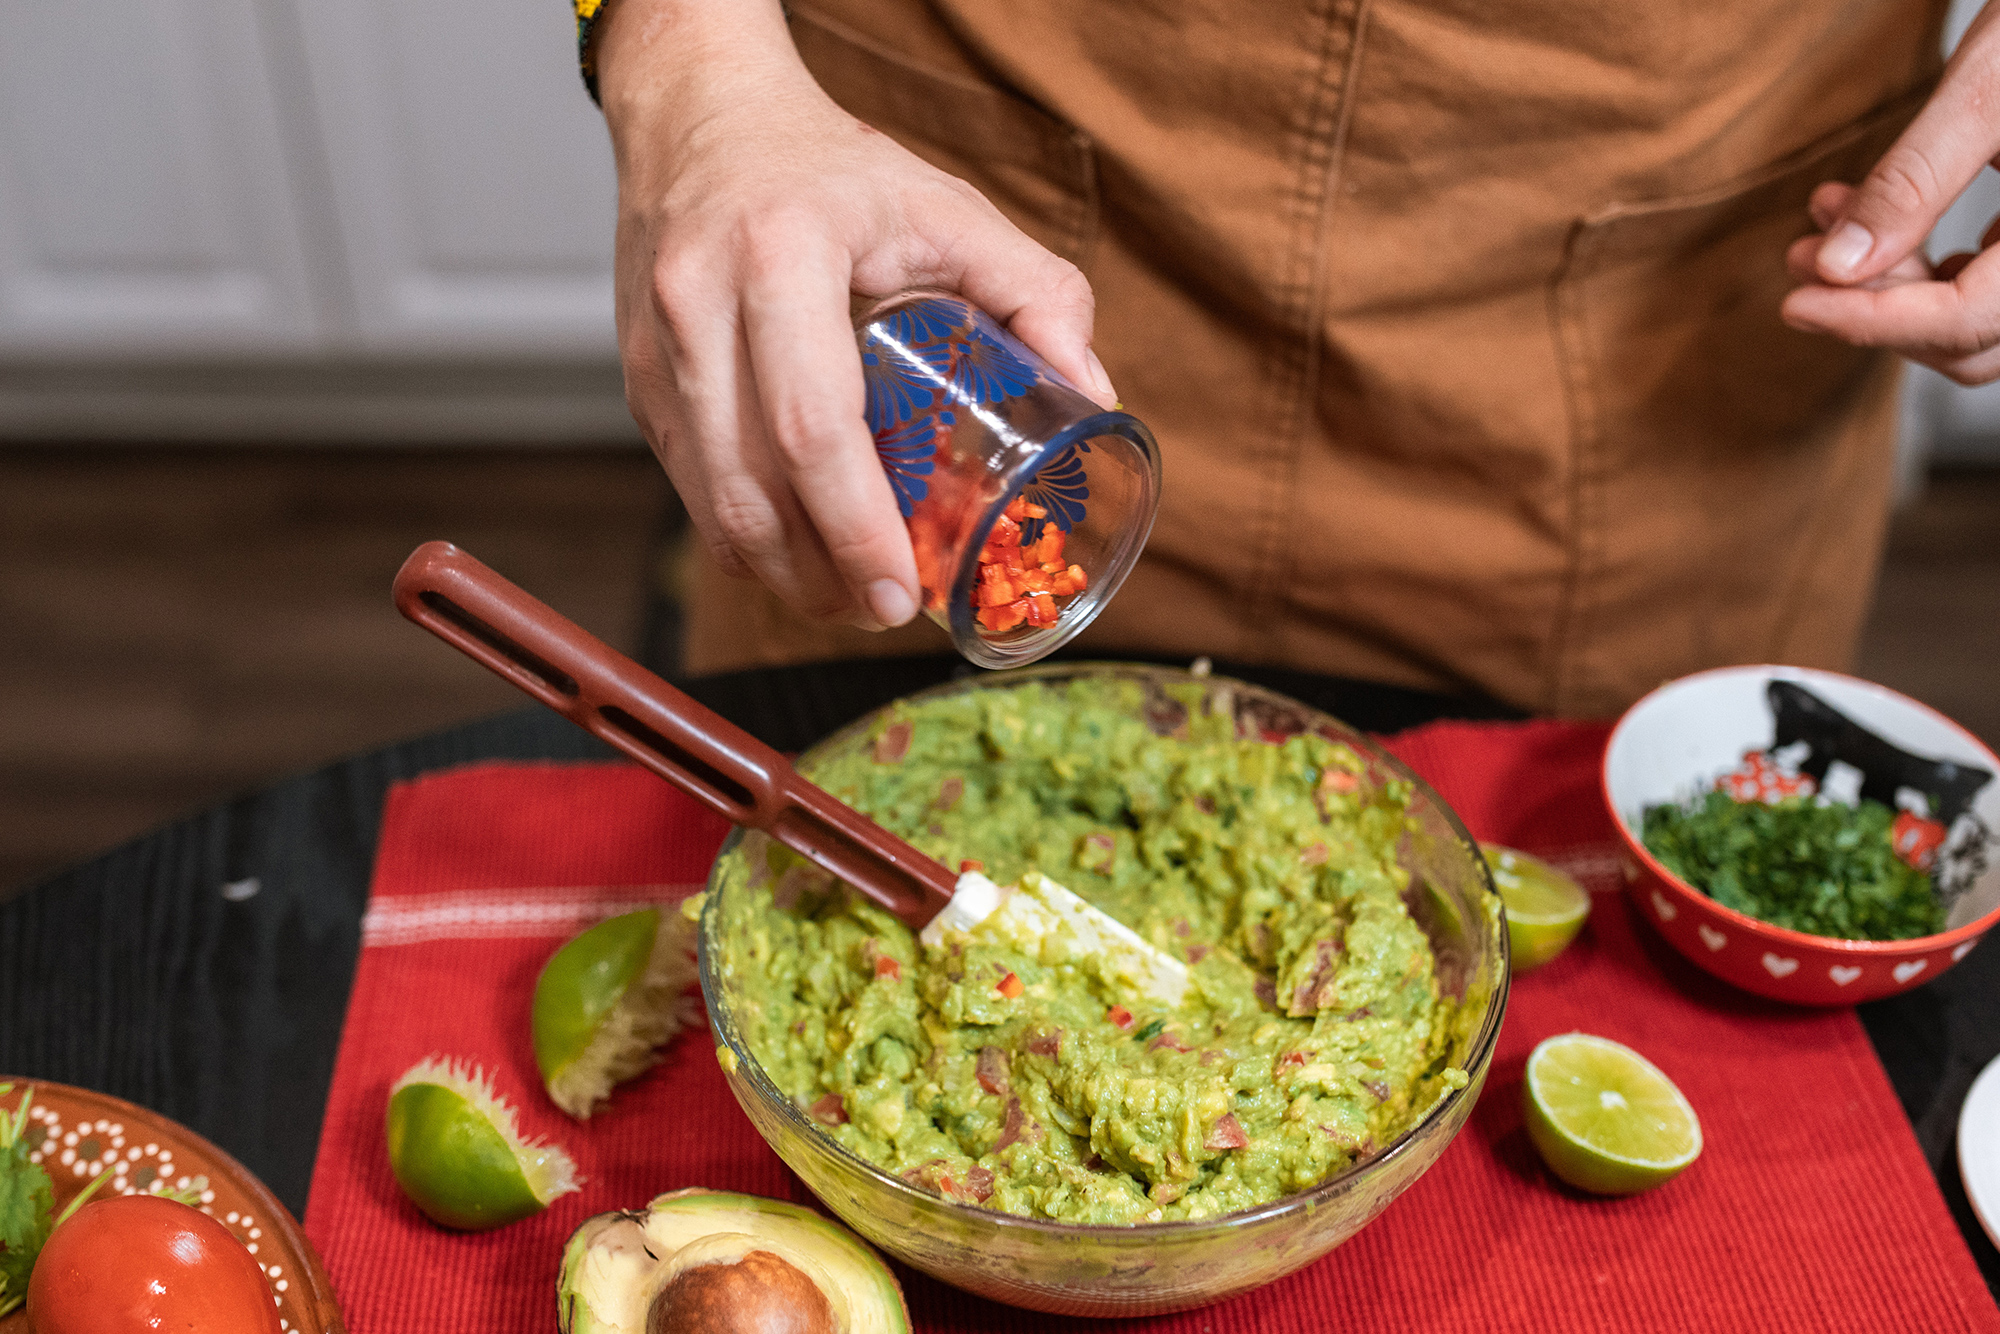 Tips for homemade guacamole